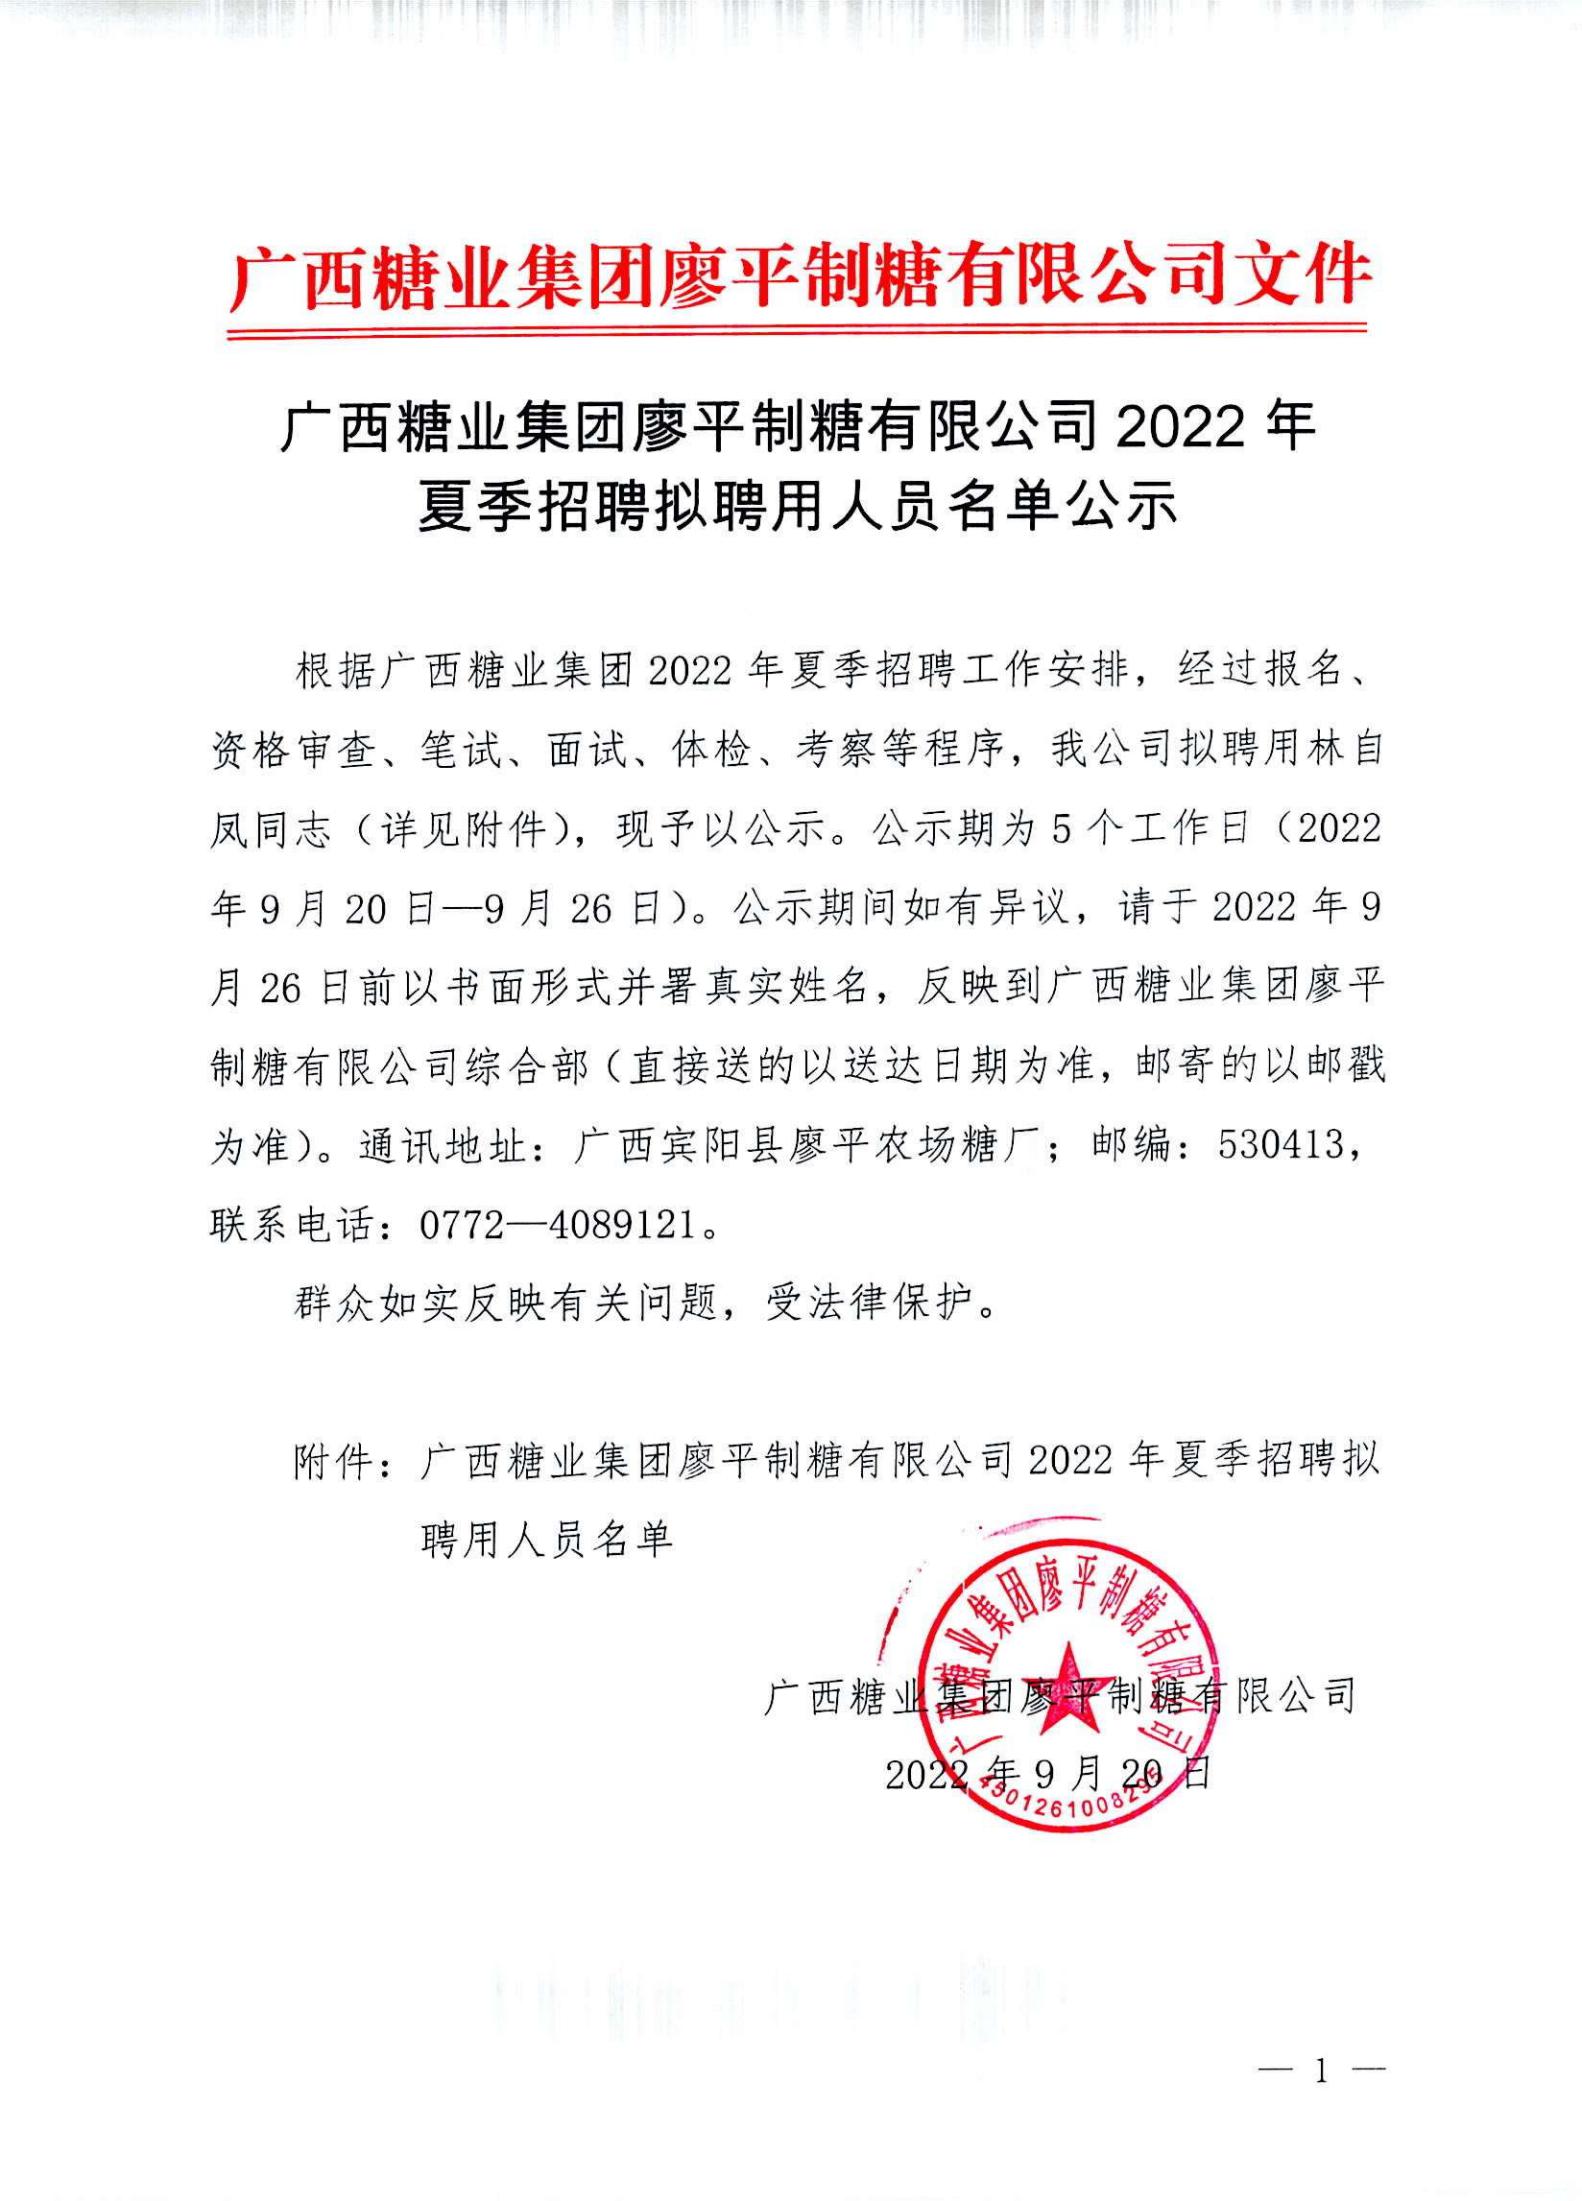 3  广西糖业集团廖平制糖有限公司2022年夏季招聘拟聘用人员名单公示(1)_00.jpg